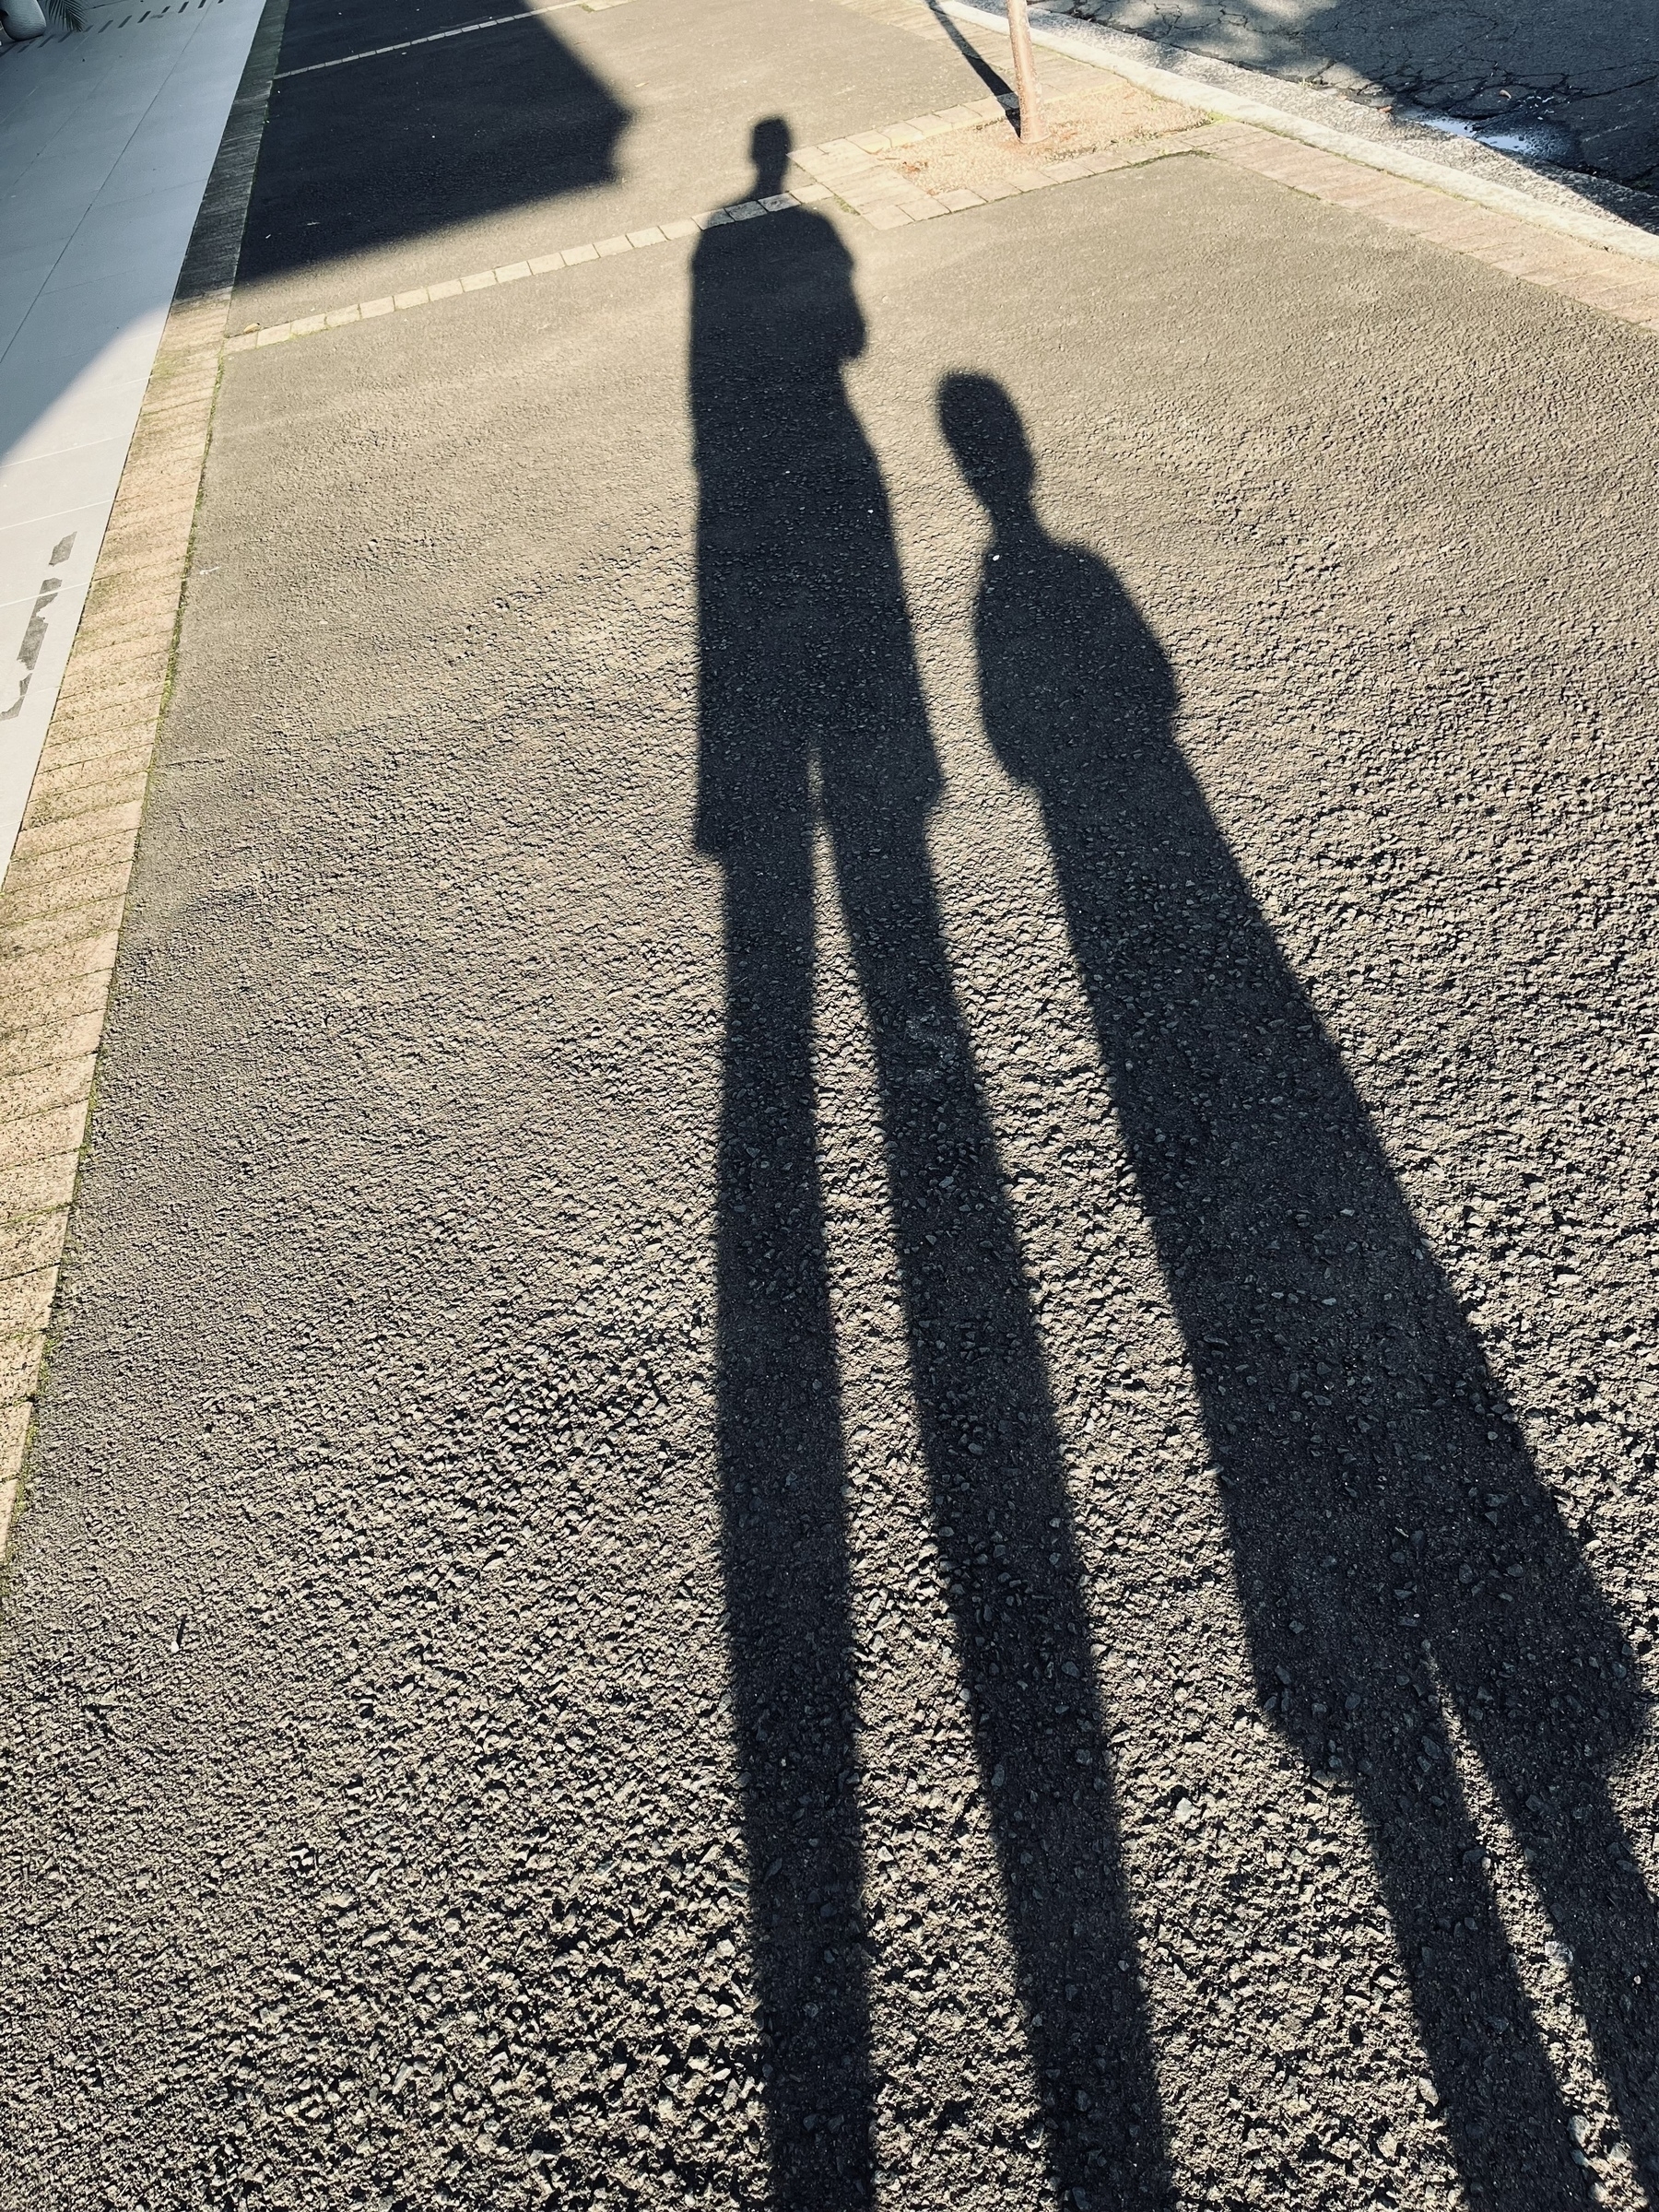 Two shadows stretch across a suburban footpath.